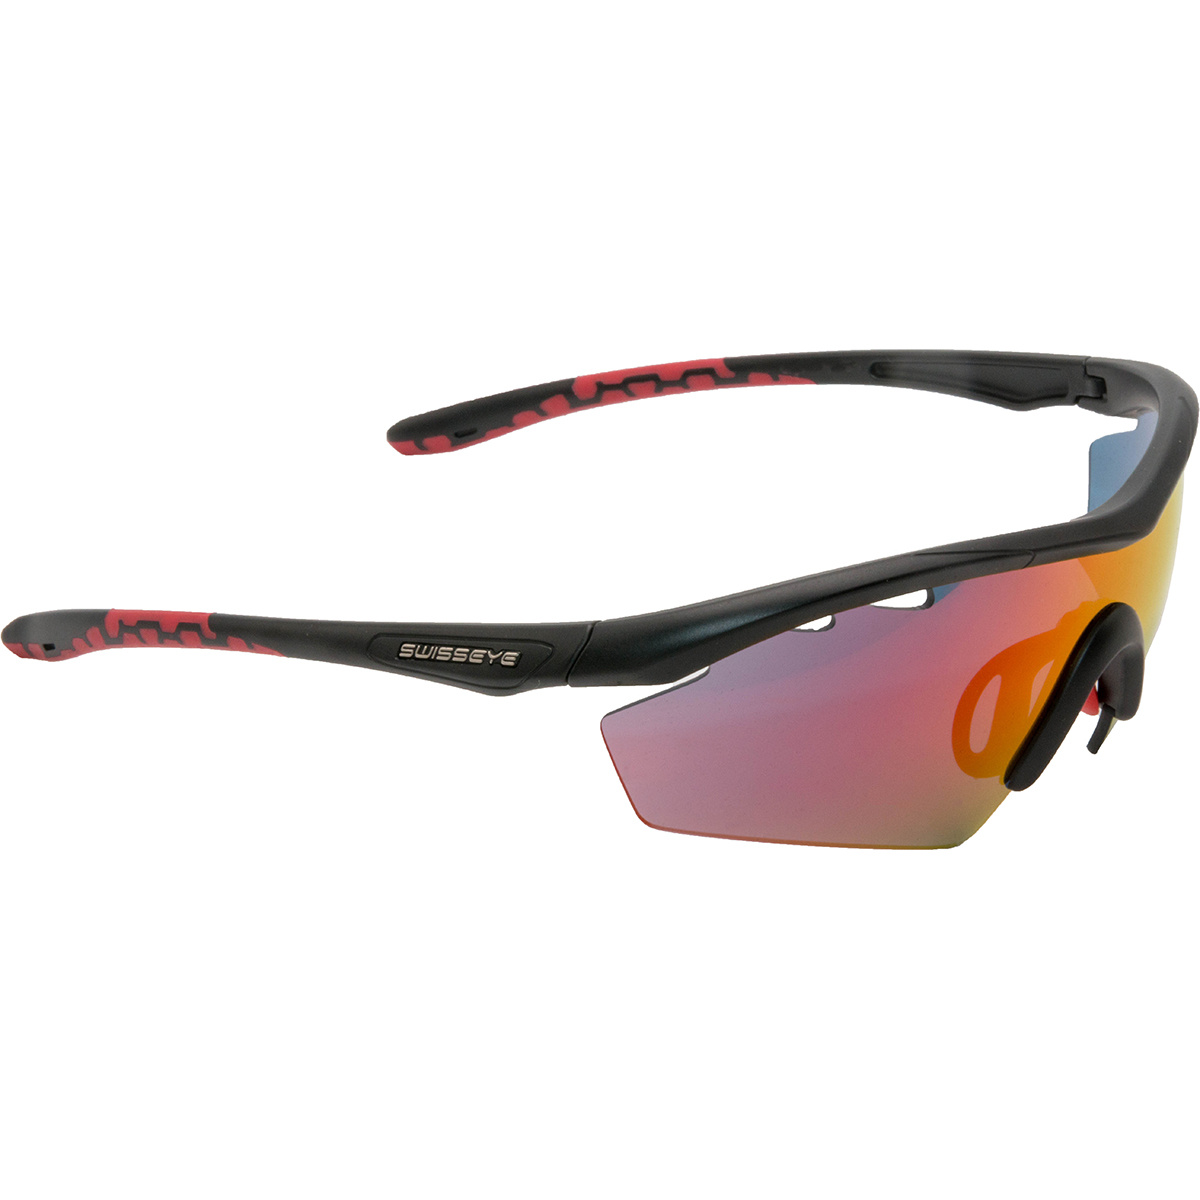 Swiss Eye Solena Sportbrille (Größe One Size, schwarz)